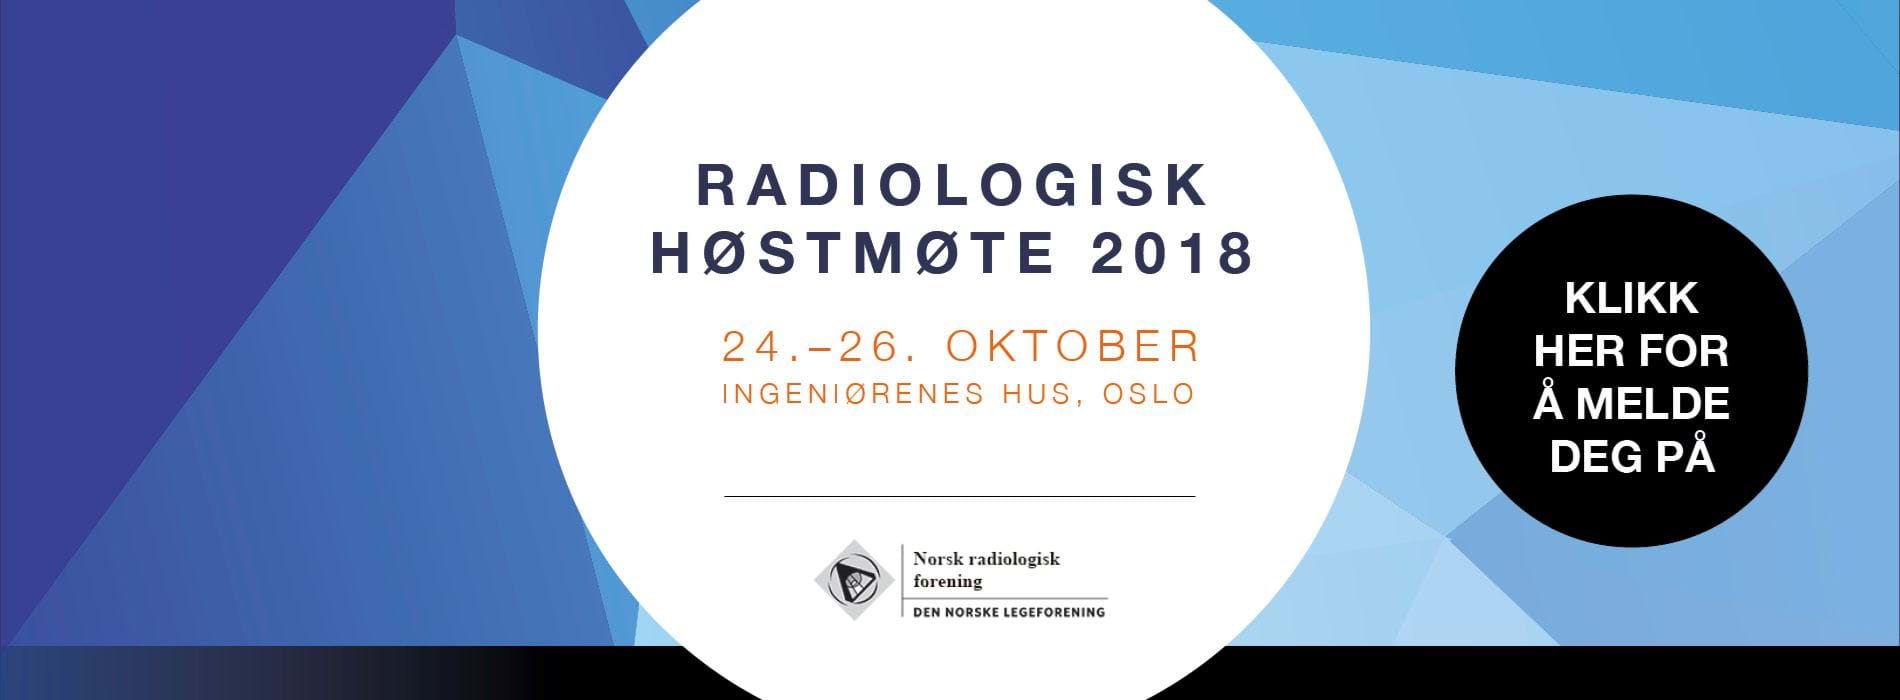 Radiologisk høstmøte 2018 banner